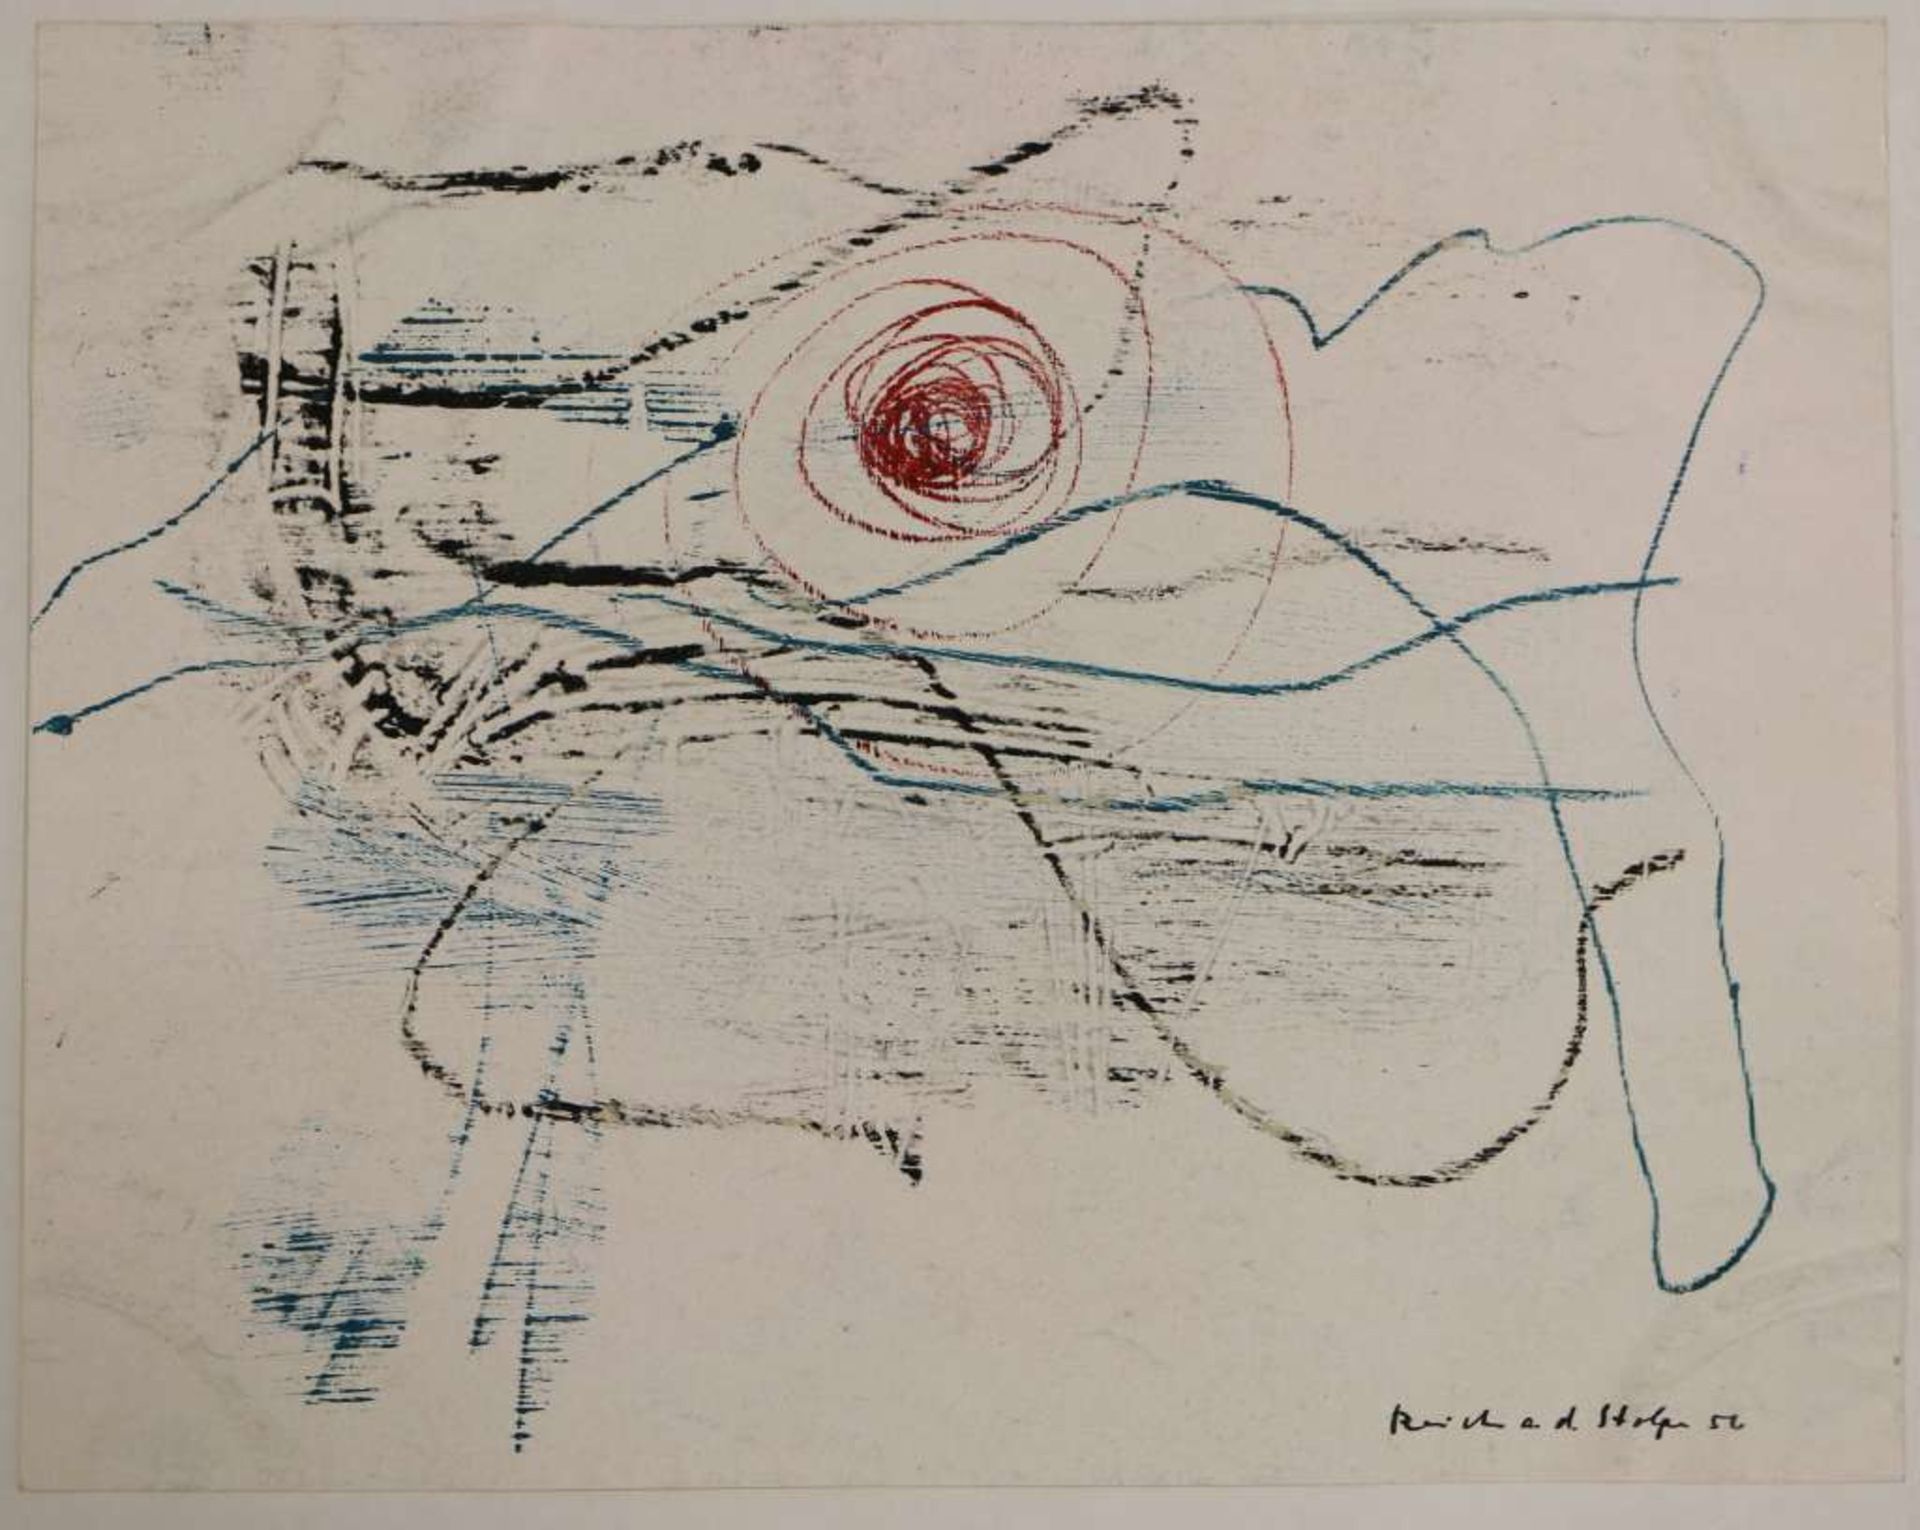 Siegfried REICH AN DER STOLPE (1912-2001), drei abstrakte Kompositionen, jew. sign. u. dat. 56, zwei - Bild 3 aus 4